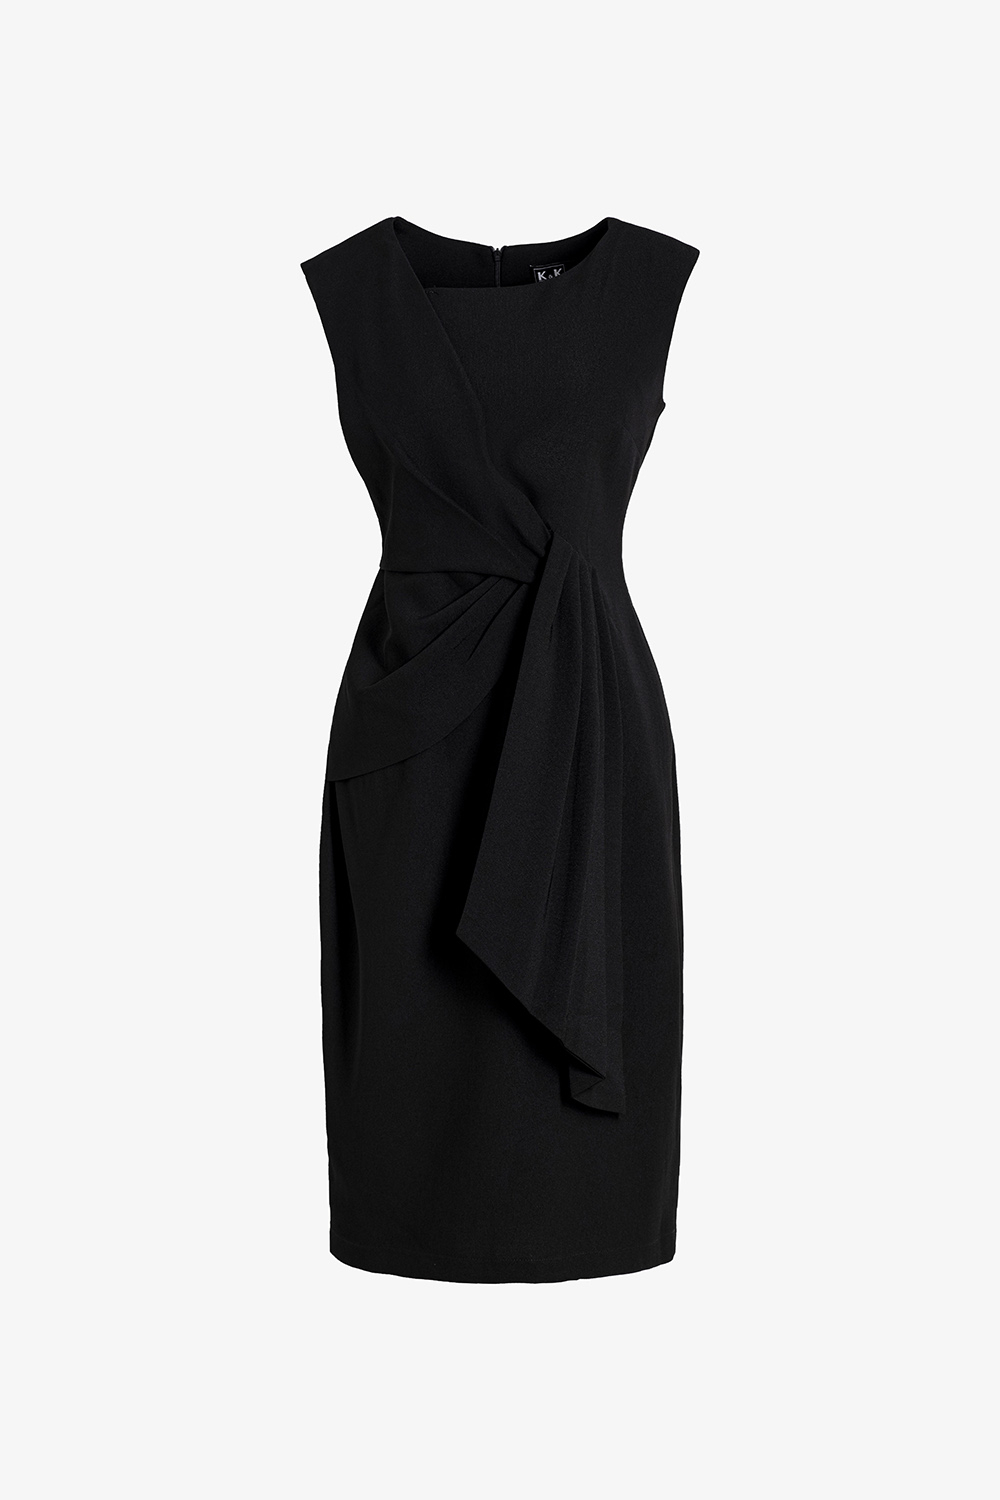 99+ Mẫu váy đầm công sở nữ màu đen | Phú Hoàng Uniform